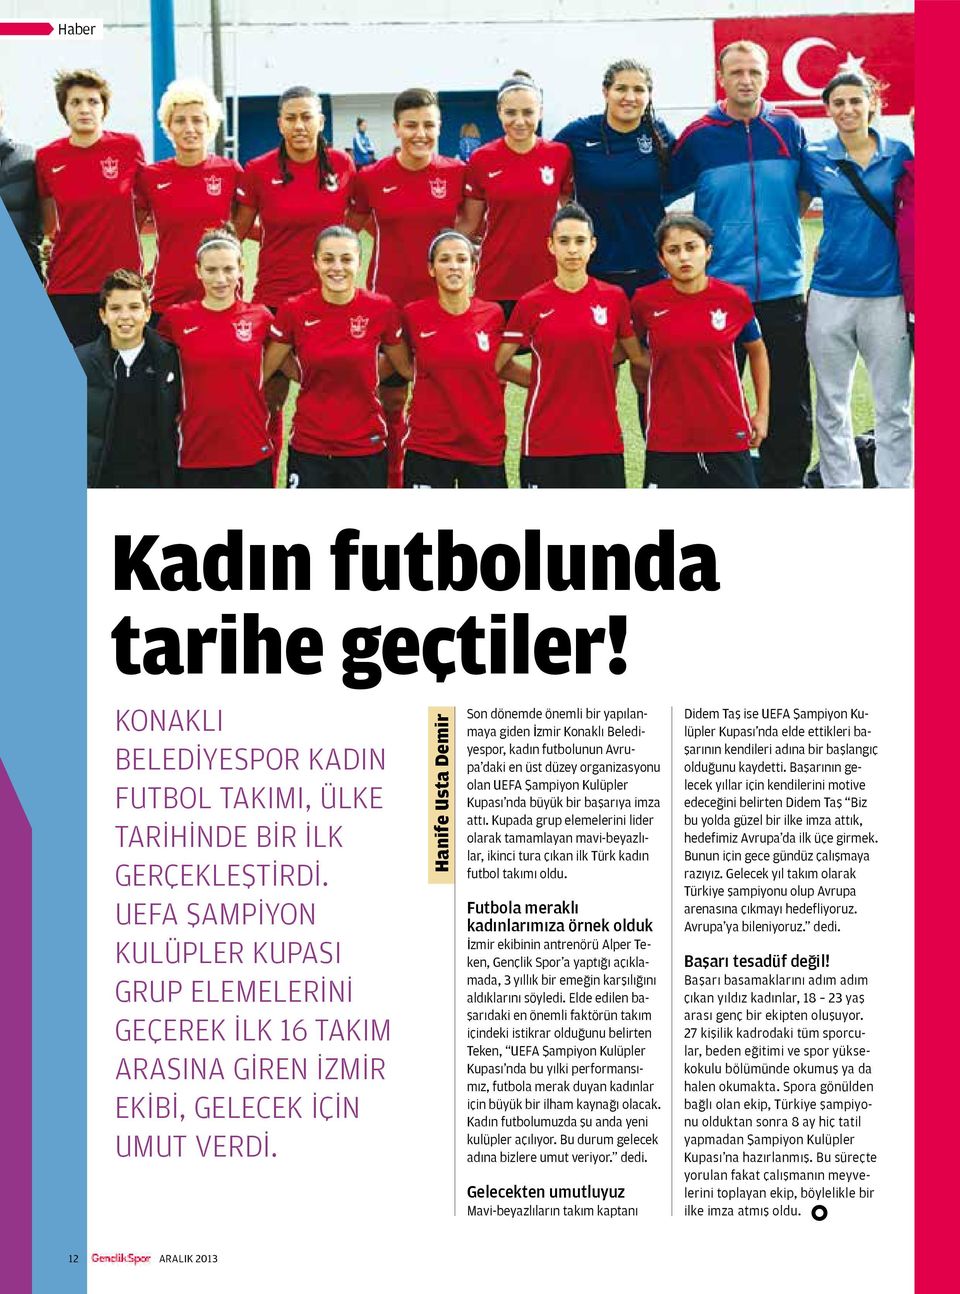 Hanife Usta Demir Son dönemde önemli bir yapılanmaya giden İzmir Konaklı Belediyespor, kadın futbolunun Avrupa daki en üst düzey organizasyonu olan UEFA Şampiyon Kulüpler Kupası nda büyük bir